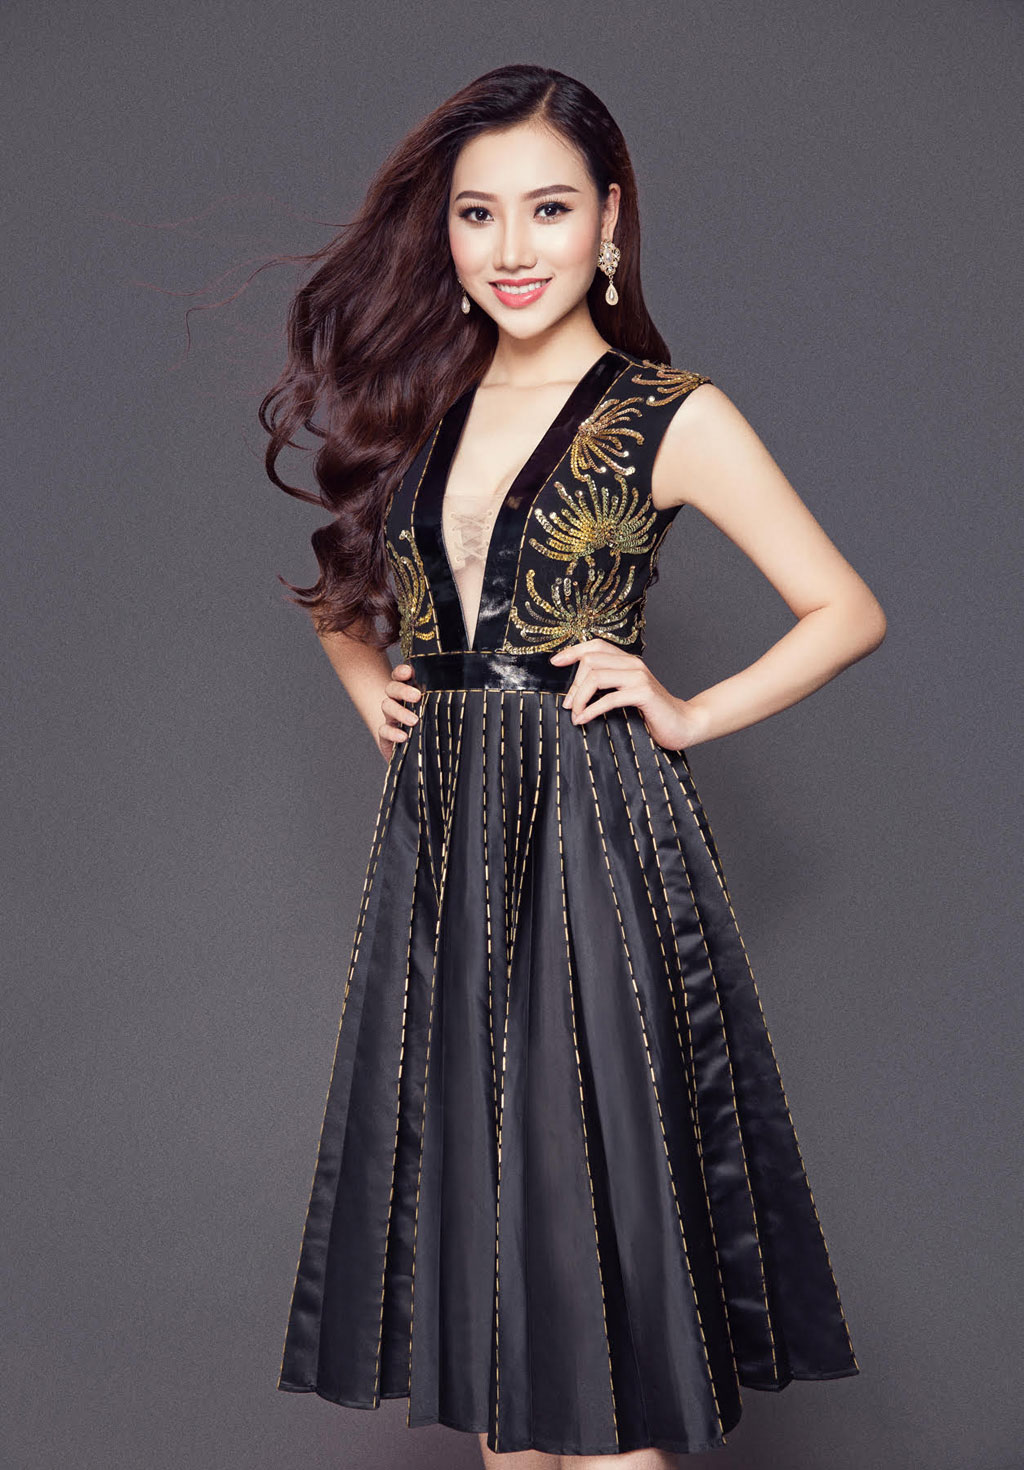 Hoàng Thu Thảo được cấp phép tham dự Miss Asia Pacific International 2016 1